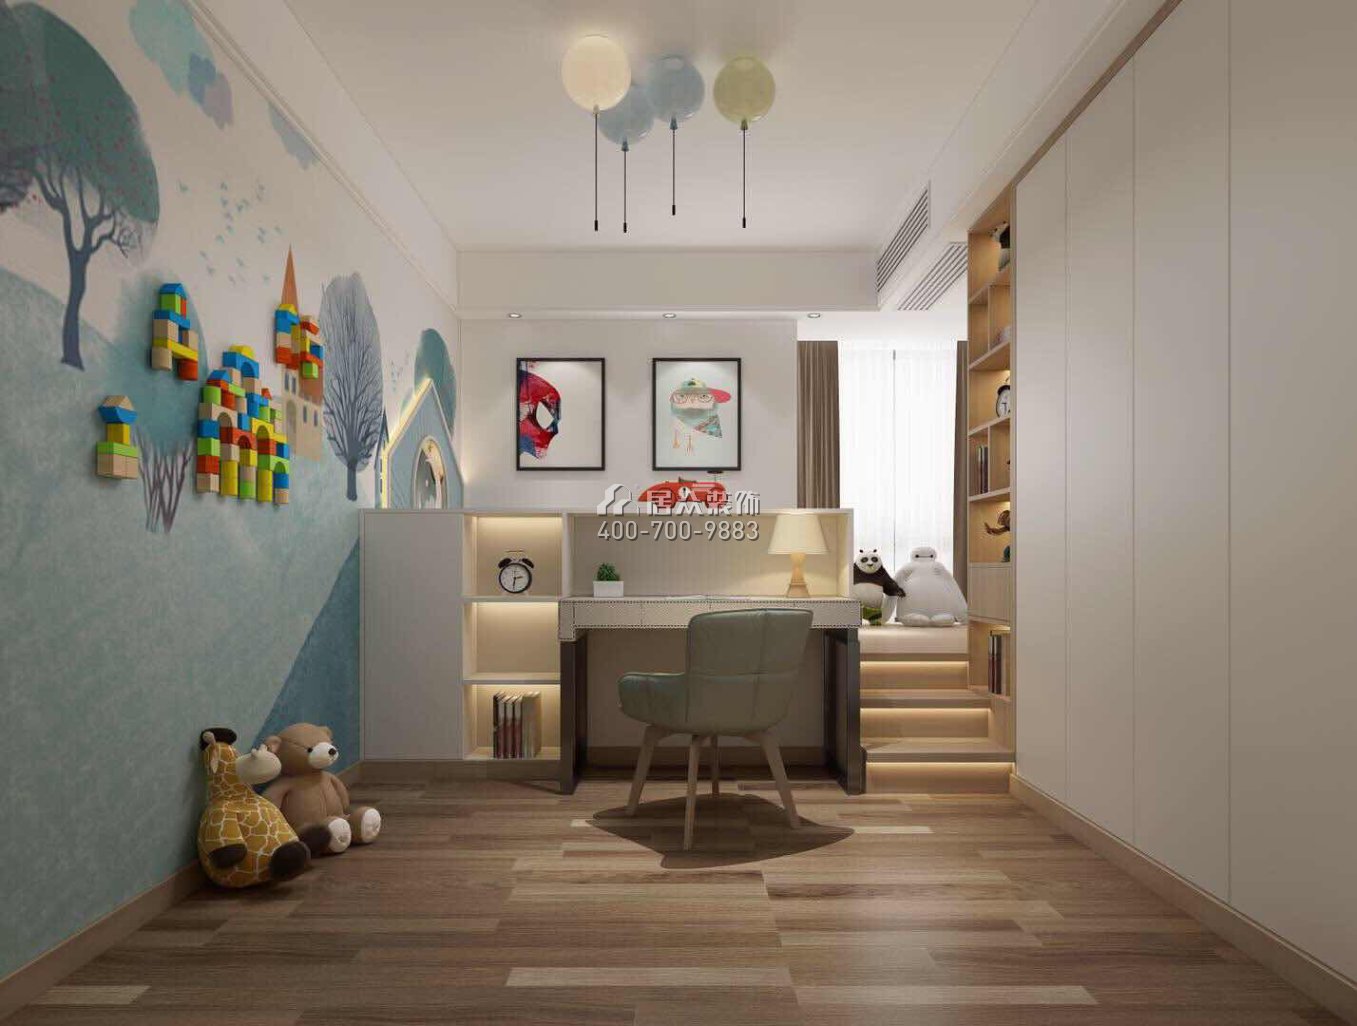 鼎峰尚境155平方米现代简约风格平层户型儿童房装修效果图